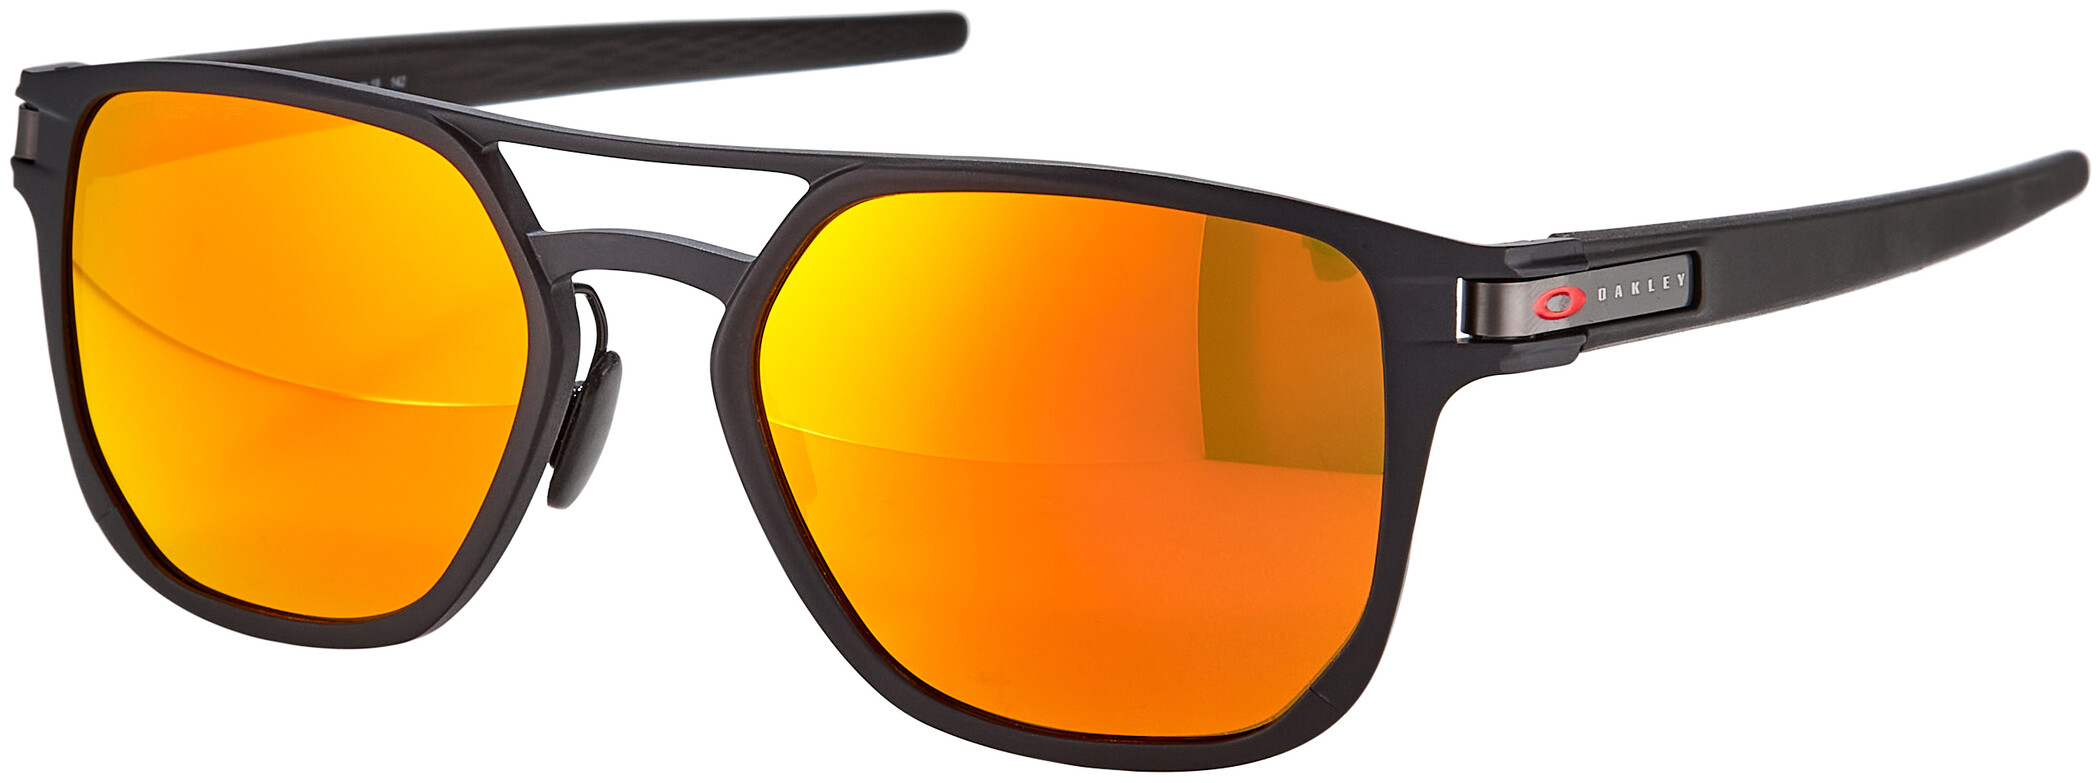 oakley sonnenbrille polarized